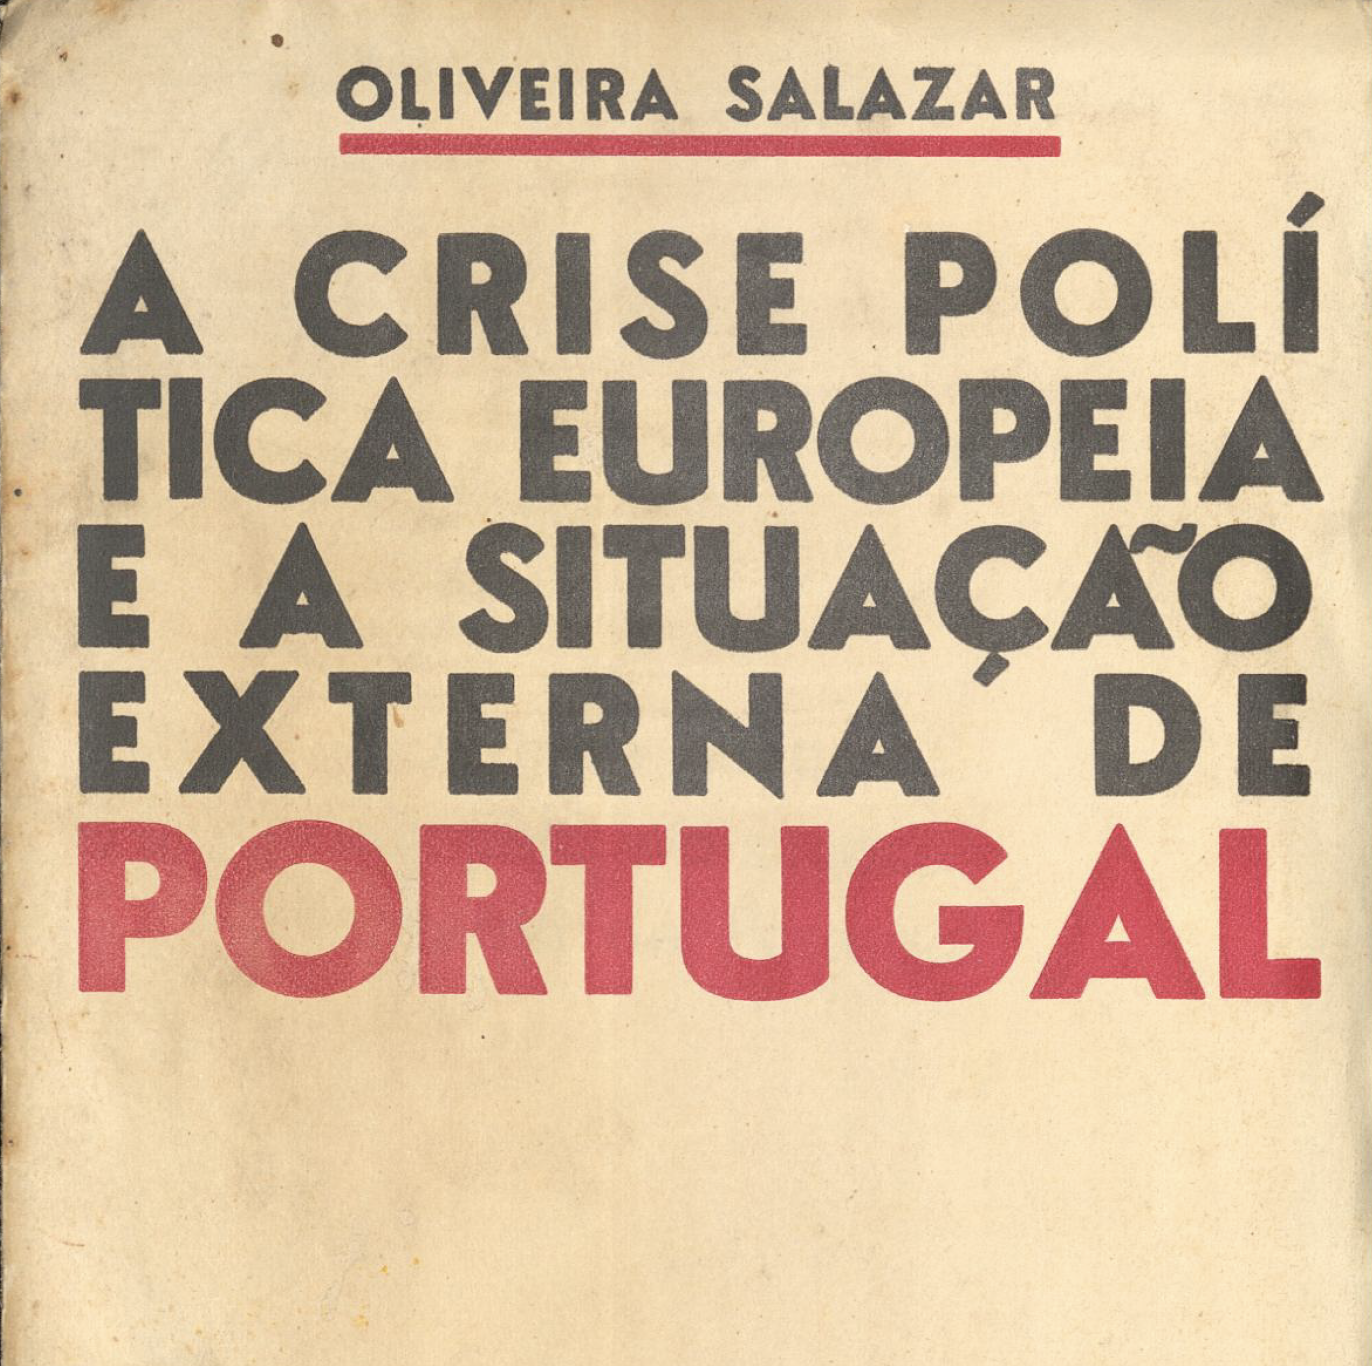 A crise política europeia e a situação externa de Portugal